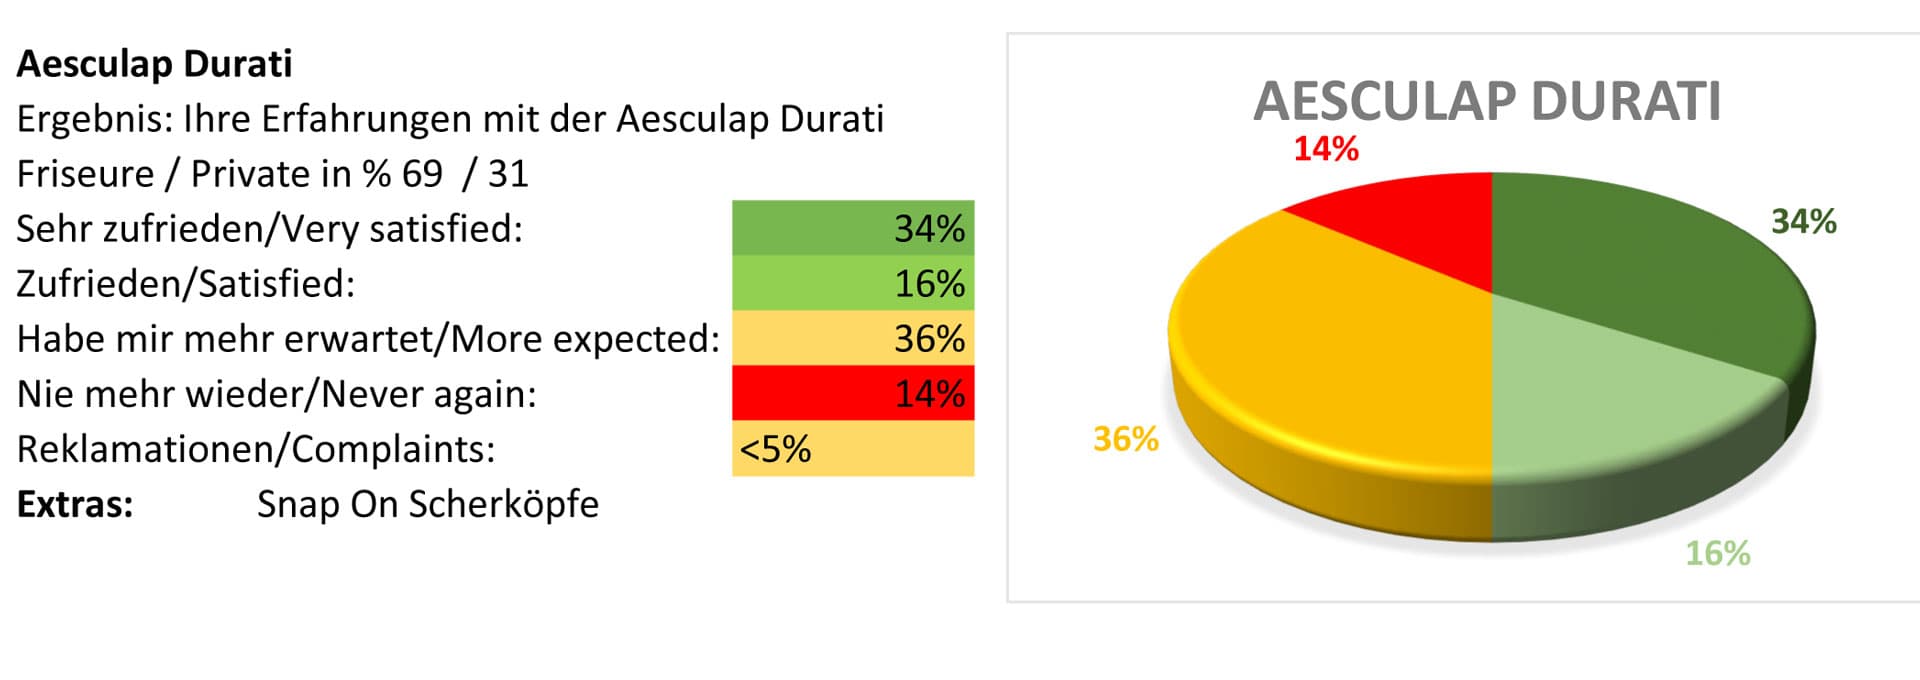 Aesculap Durati pet clipper test report